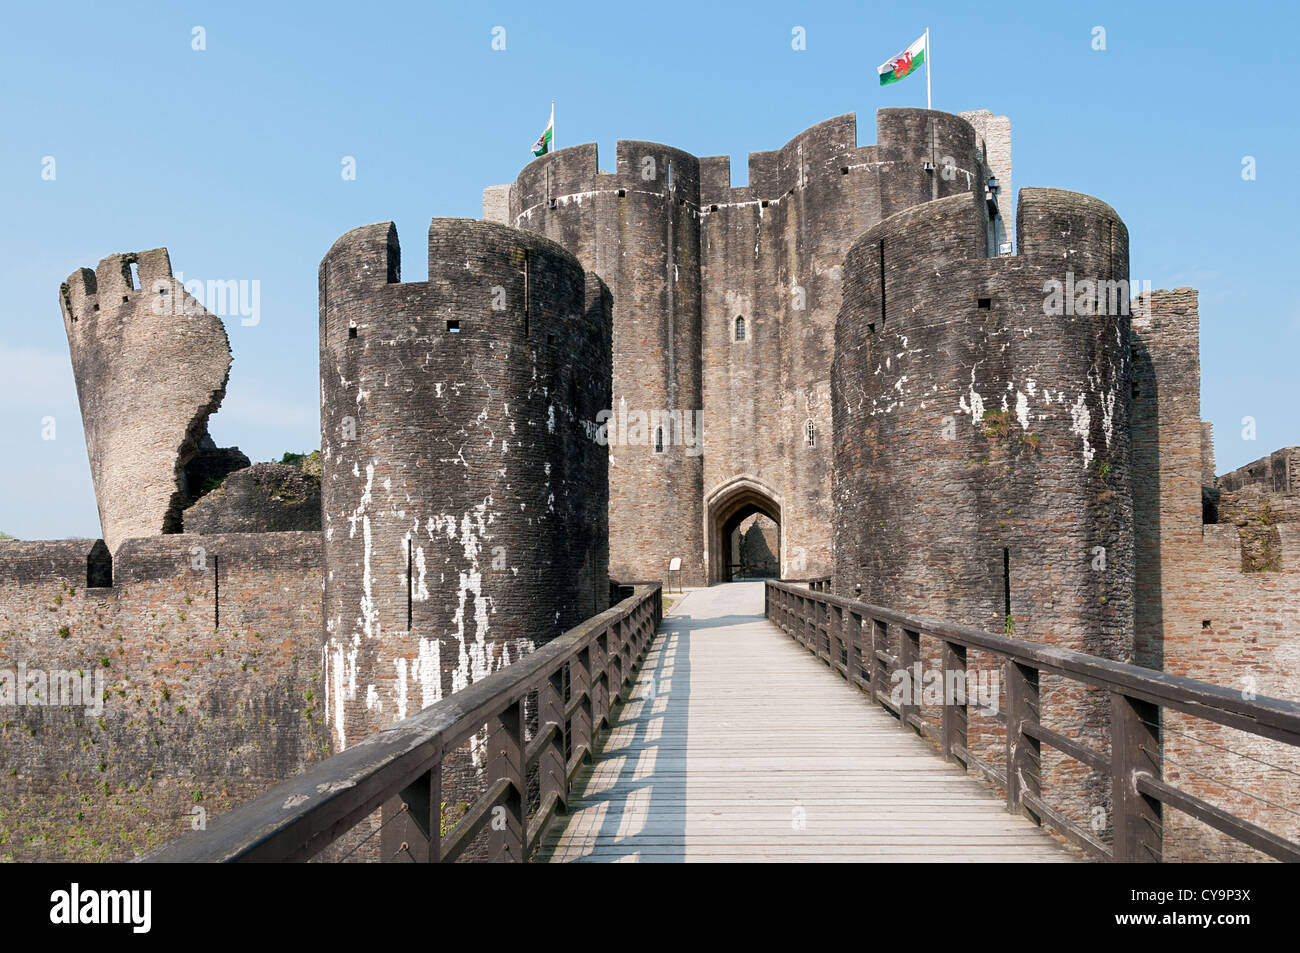 Pays de Galles, château de Caerphilly, la construction a commencé 1268, pont au-dessus de douves, drapeau gallois Banque D'Images